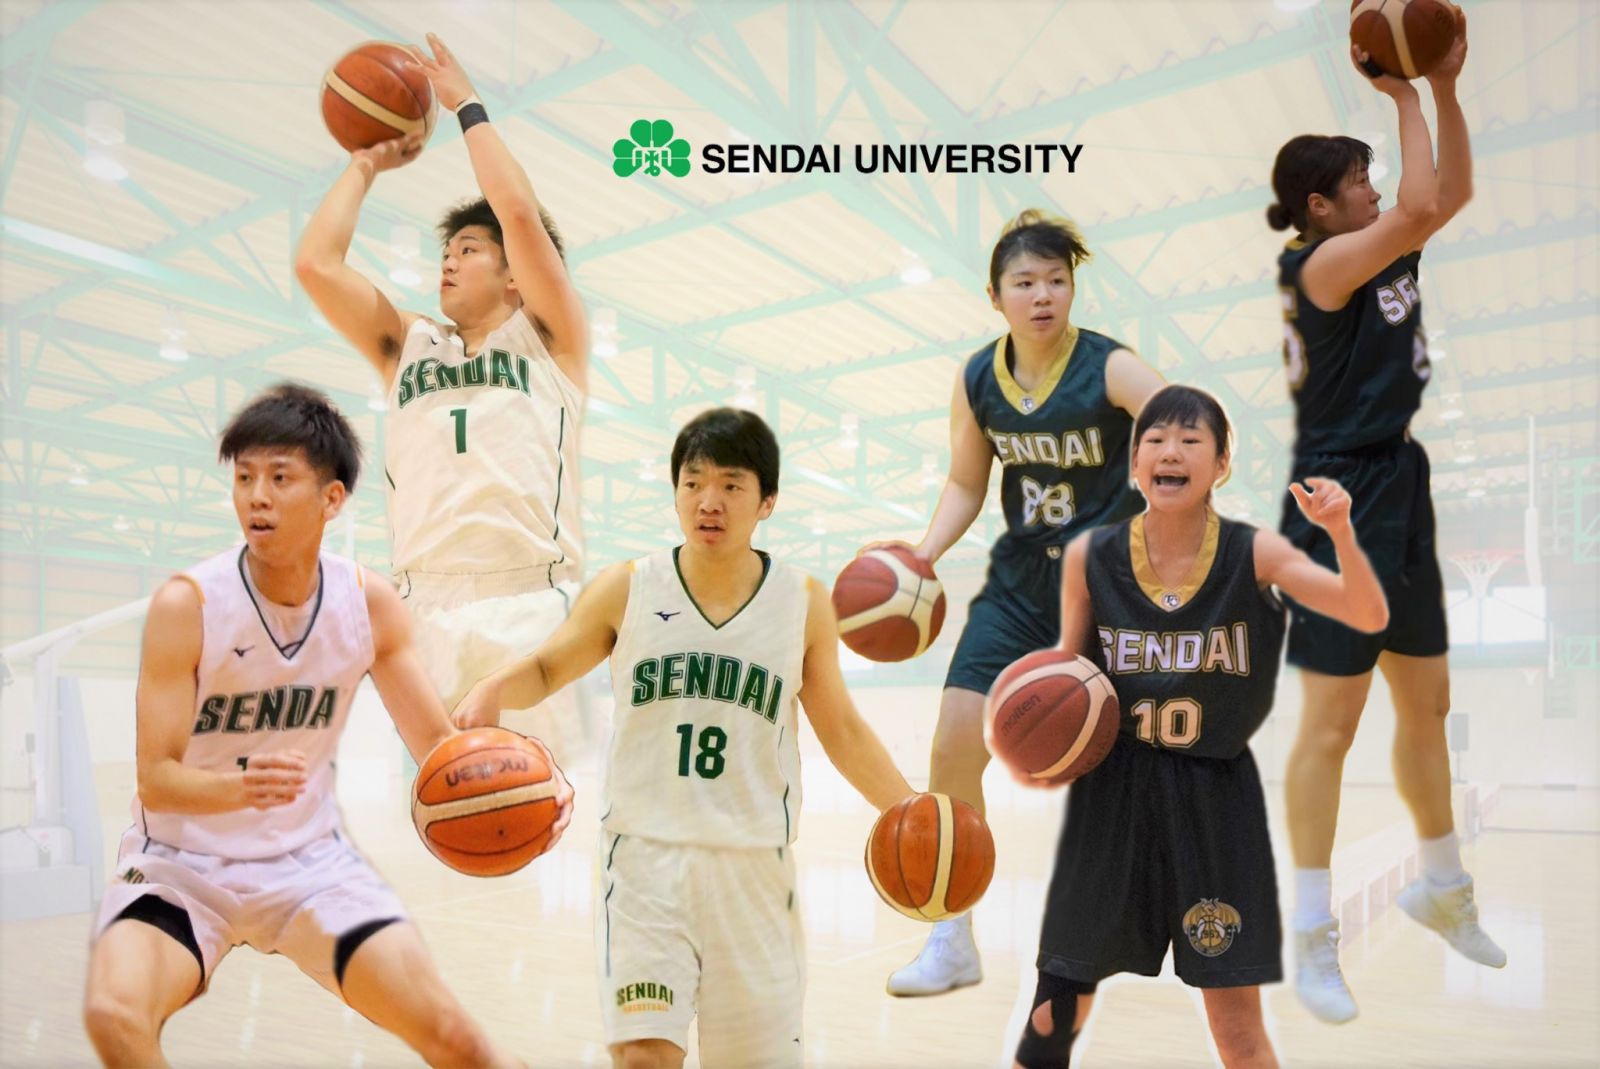 第21回 東北大学バスケットボールリーグ 開幕 トピックス 仙スポ 仙台大学スポーツサイト